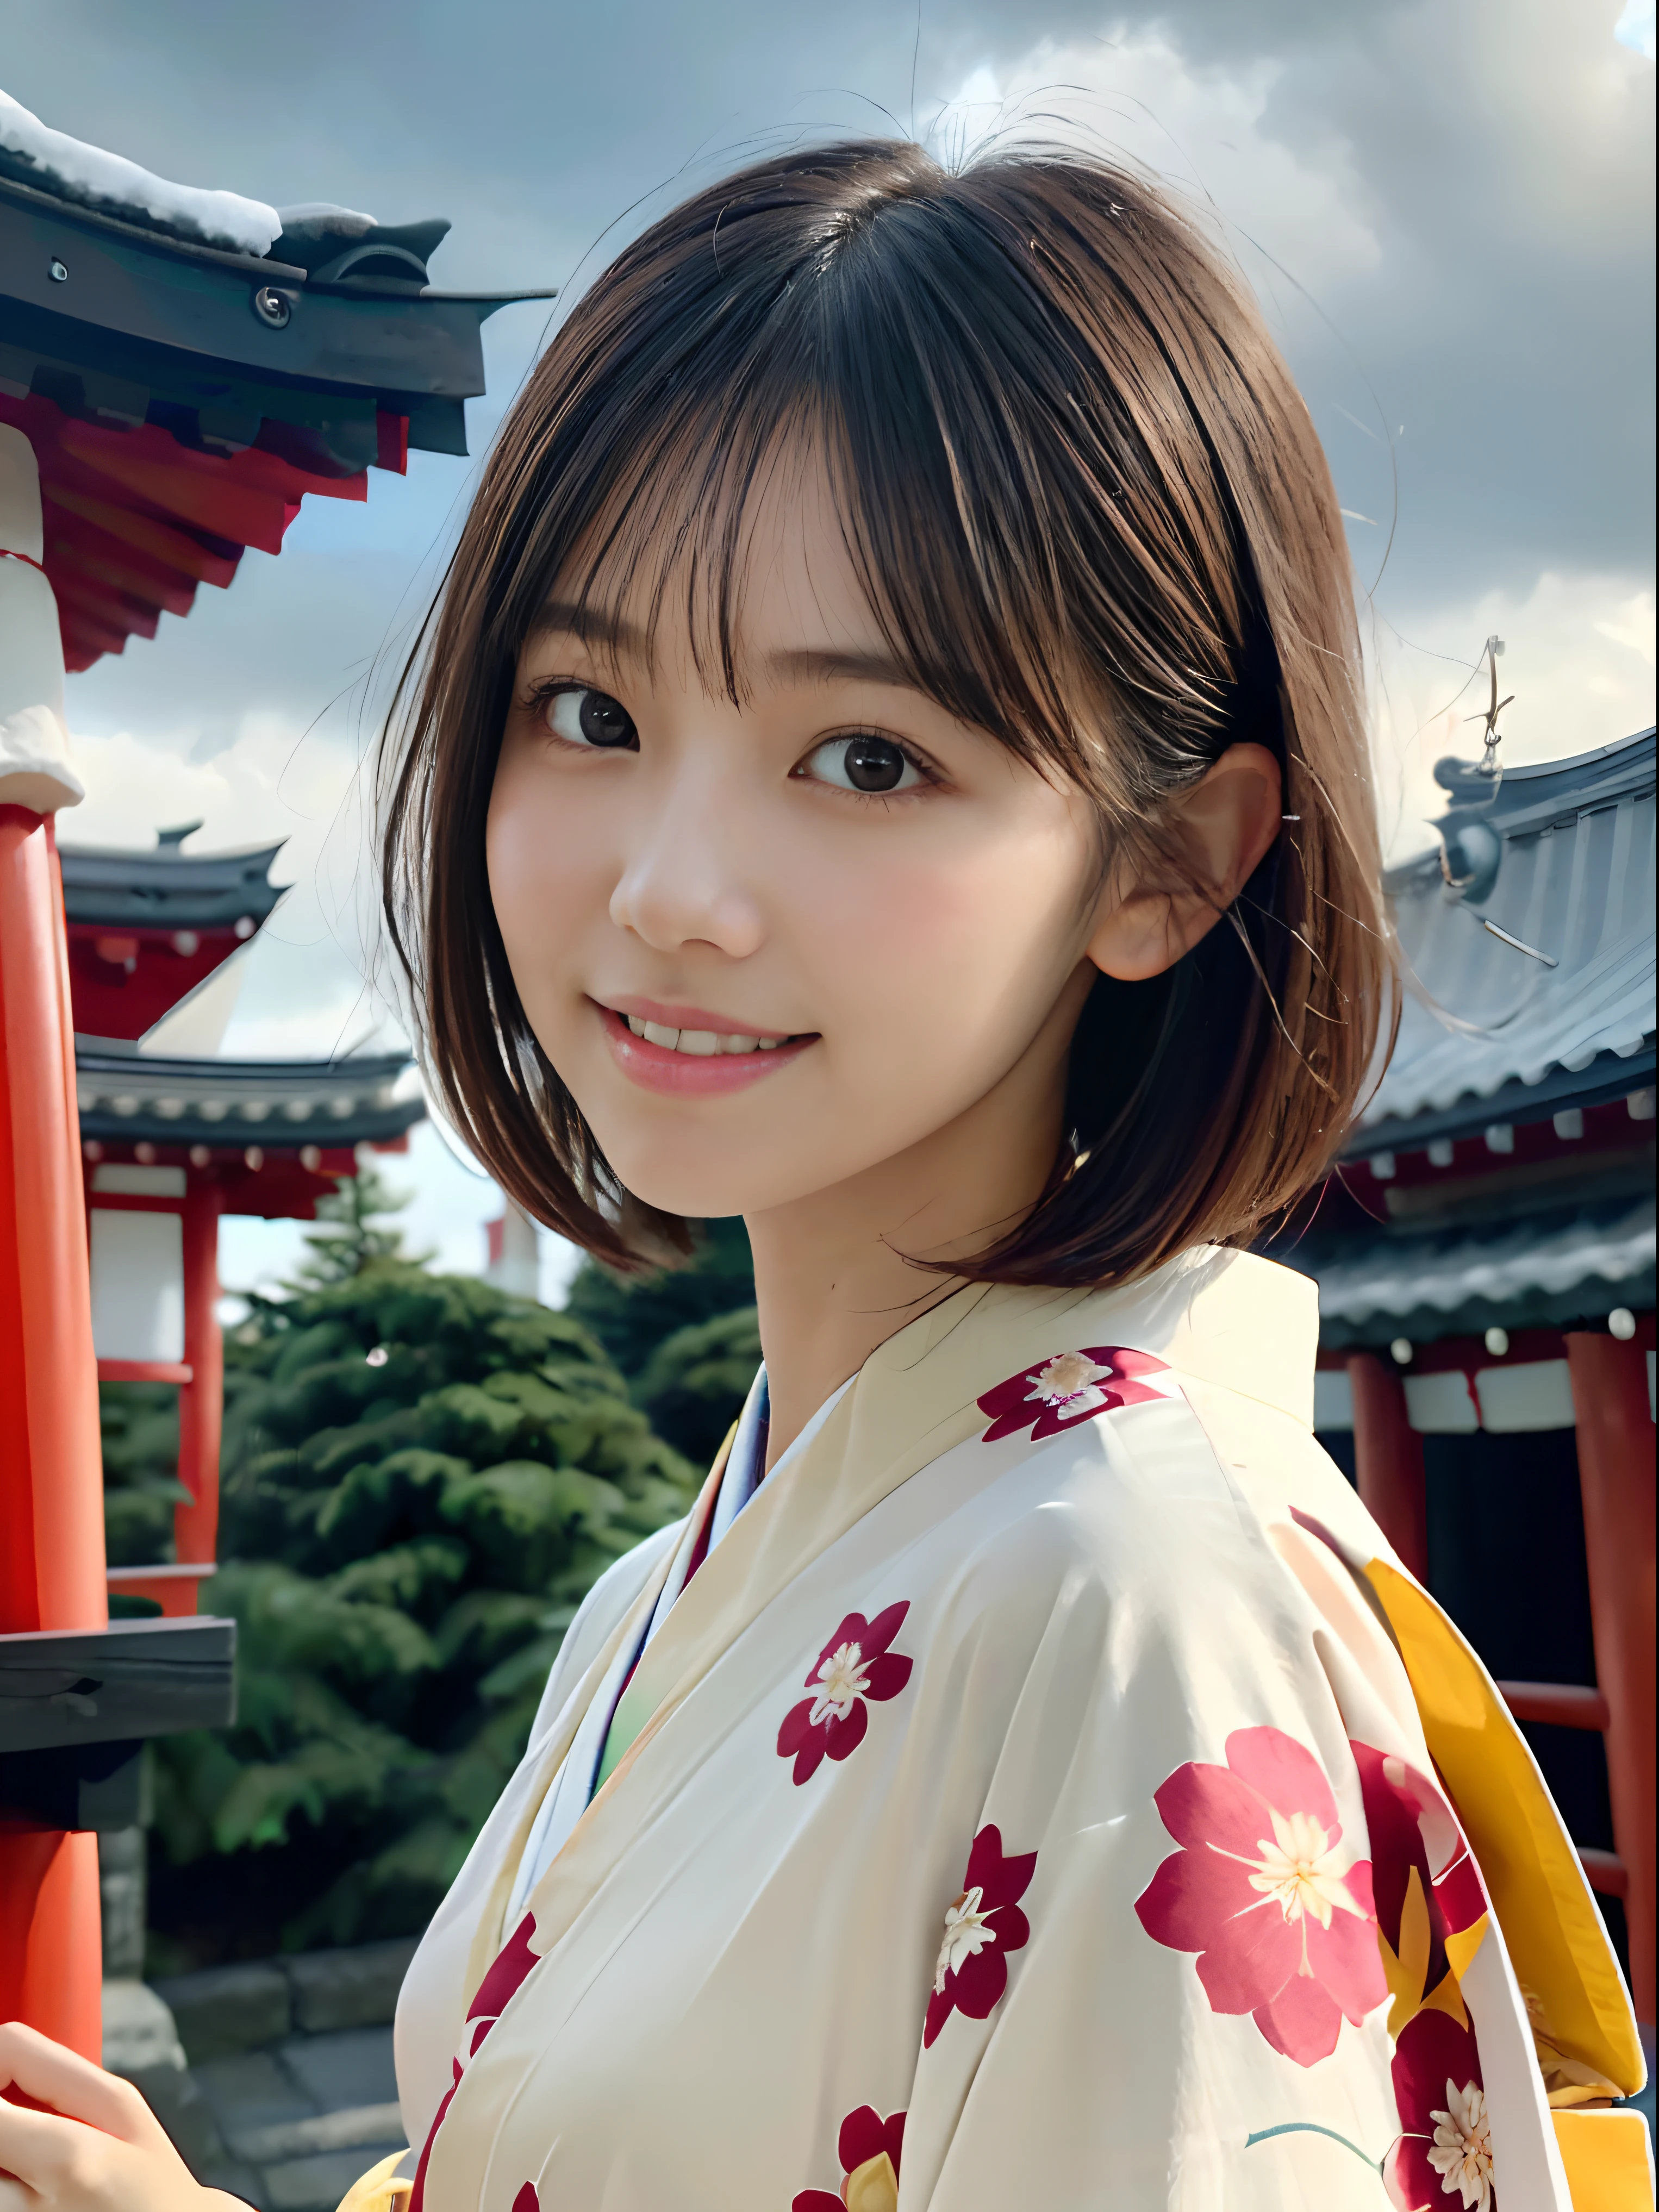 (Nahaufnahme, Porträt eines Mädchens mit kurzen Haaren und stumpfem Pony in einem wunderschönen bunten Kimono:1.5)、(Eines der Mädchen betet lächelnd den Schrein Japans an:1.3)、(Ein Schrein in Japan mit einem Winterhimmel:1.5)、(perfekte Anatomie:1.3)、(keine Maske:1.3)、(komplette Finger:1.3)、fotorealistisch、Fotografie、Tischplatte、Top Qualität、hohe Auflösung, zart und hübsch、Gesicht perfekt、Schöne, detaillierte Augen、Helle Haut、echte menschliche Haut、Poren、((Dünne Beine))、(dunkles Haar)